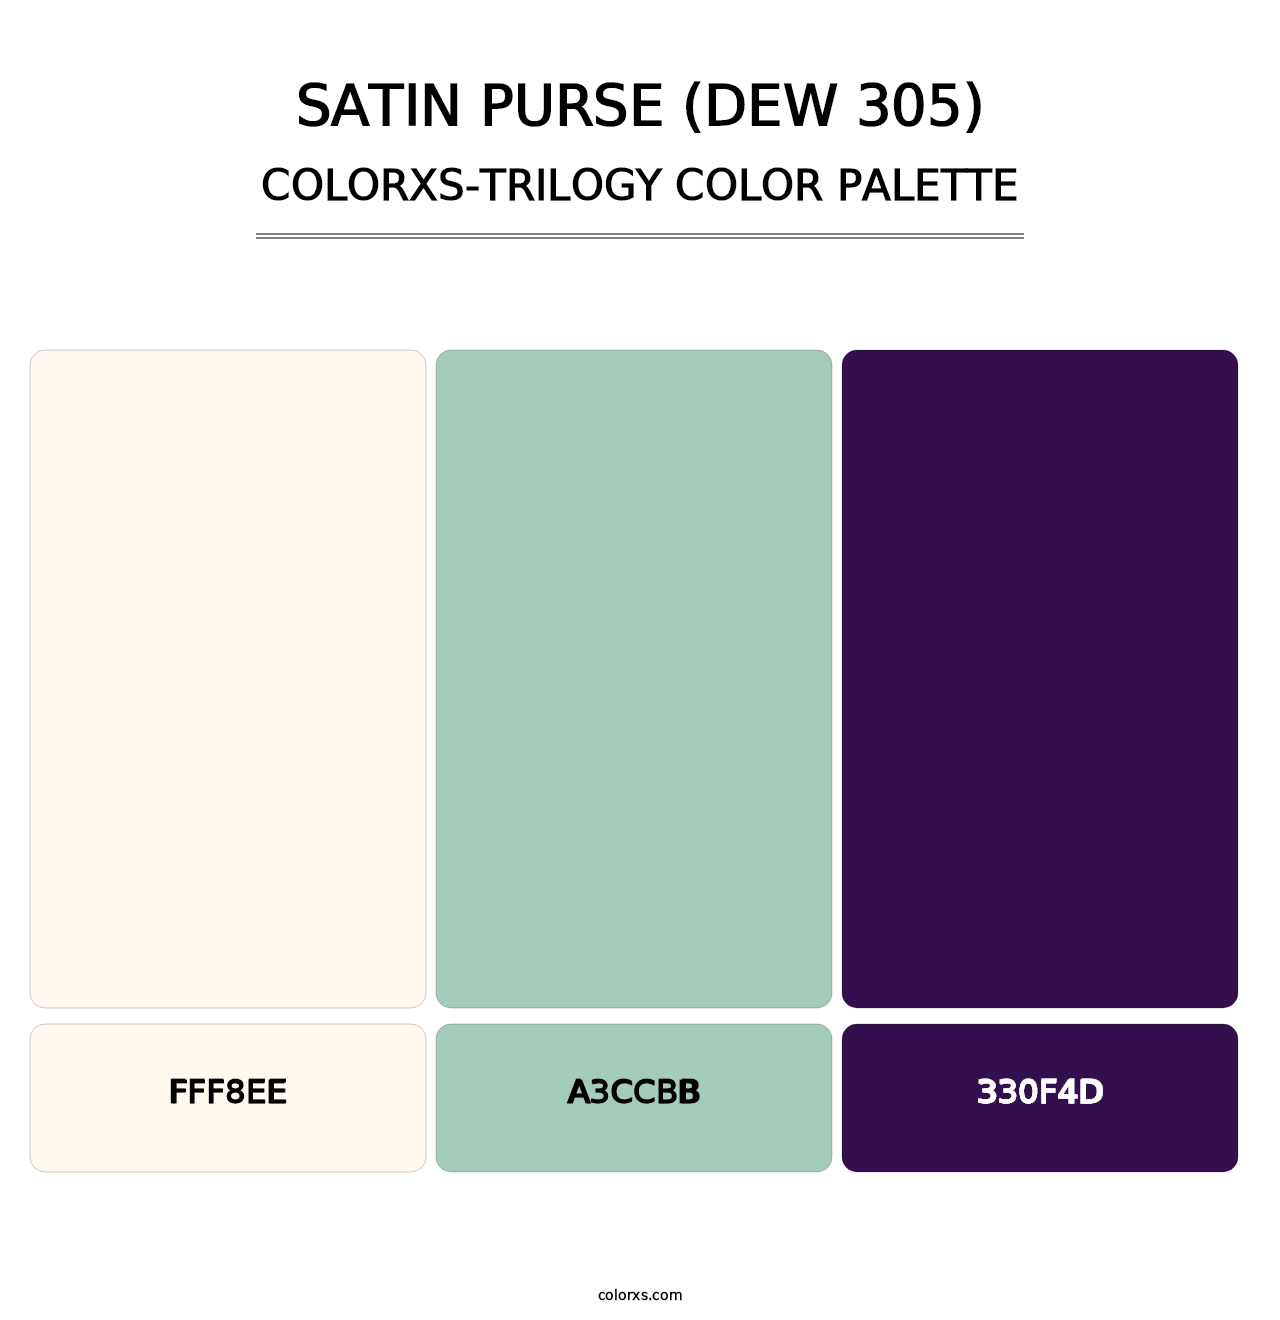 Satin Purse (DEW 305) - Colorxs Trilogy Palette